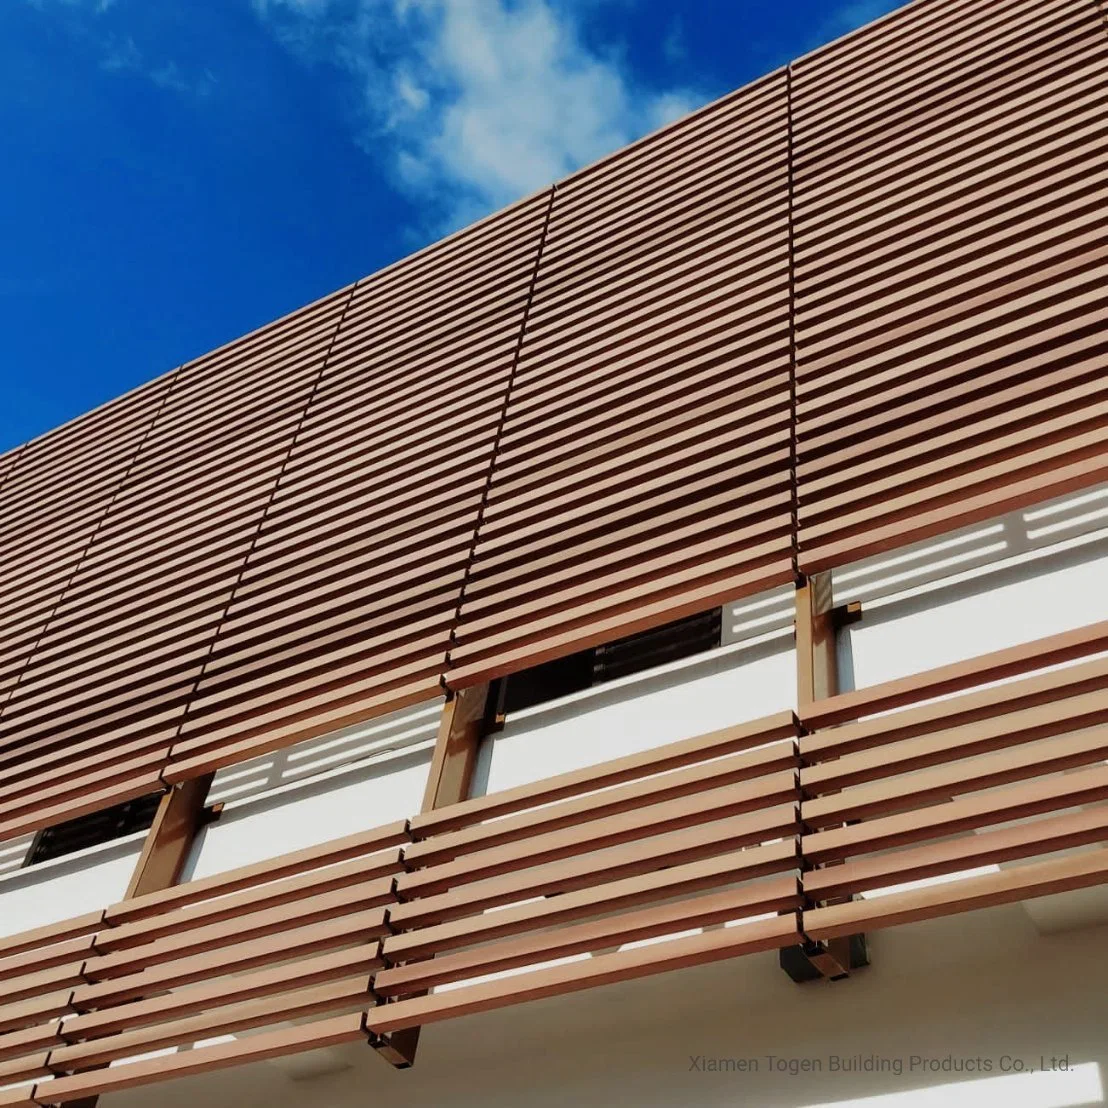 Matériaux de construction en terracotta Togen Panneau décoratif Brise-soleil pour revêtement mural en carrelage